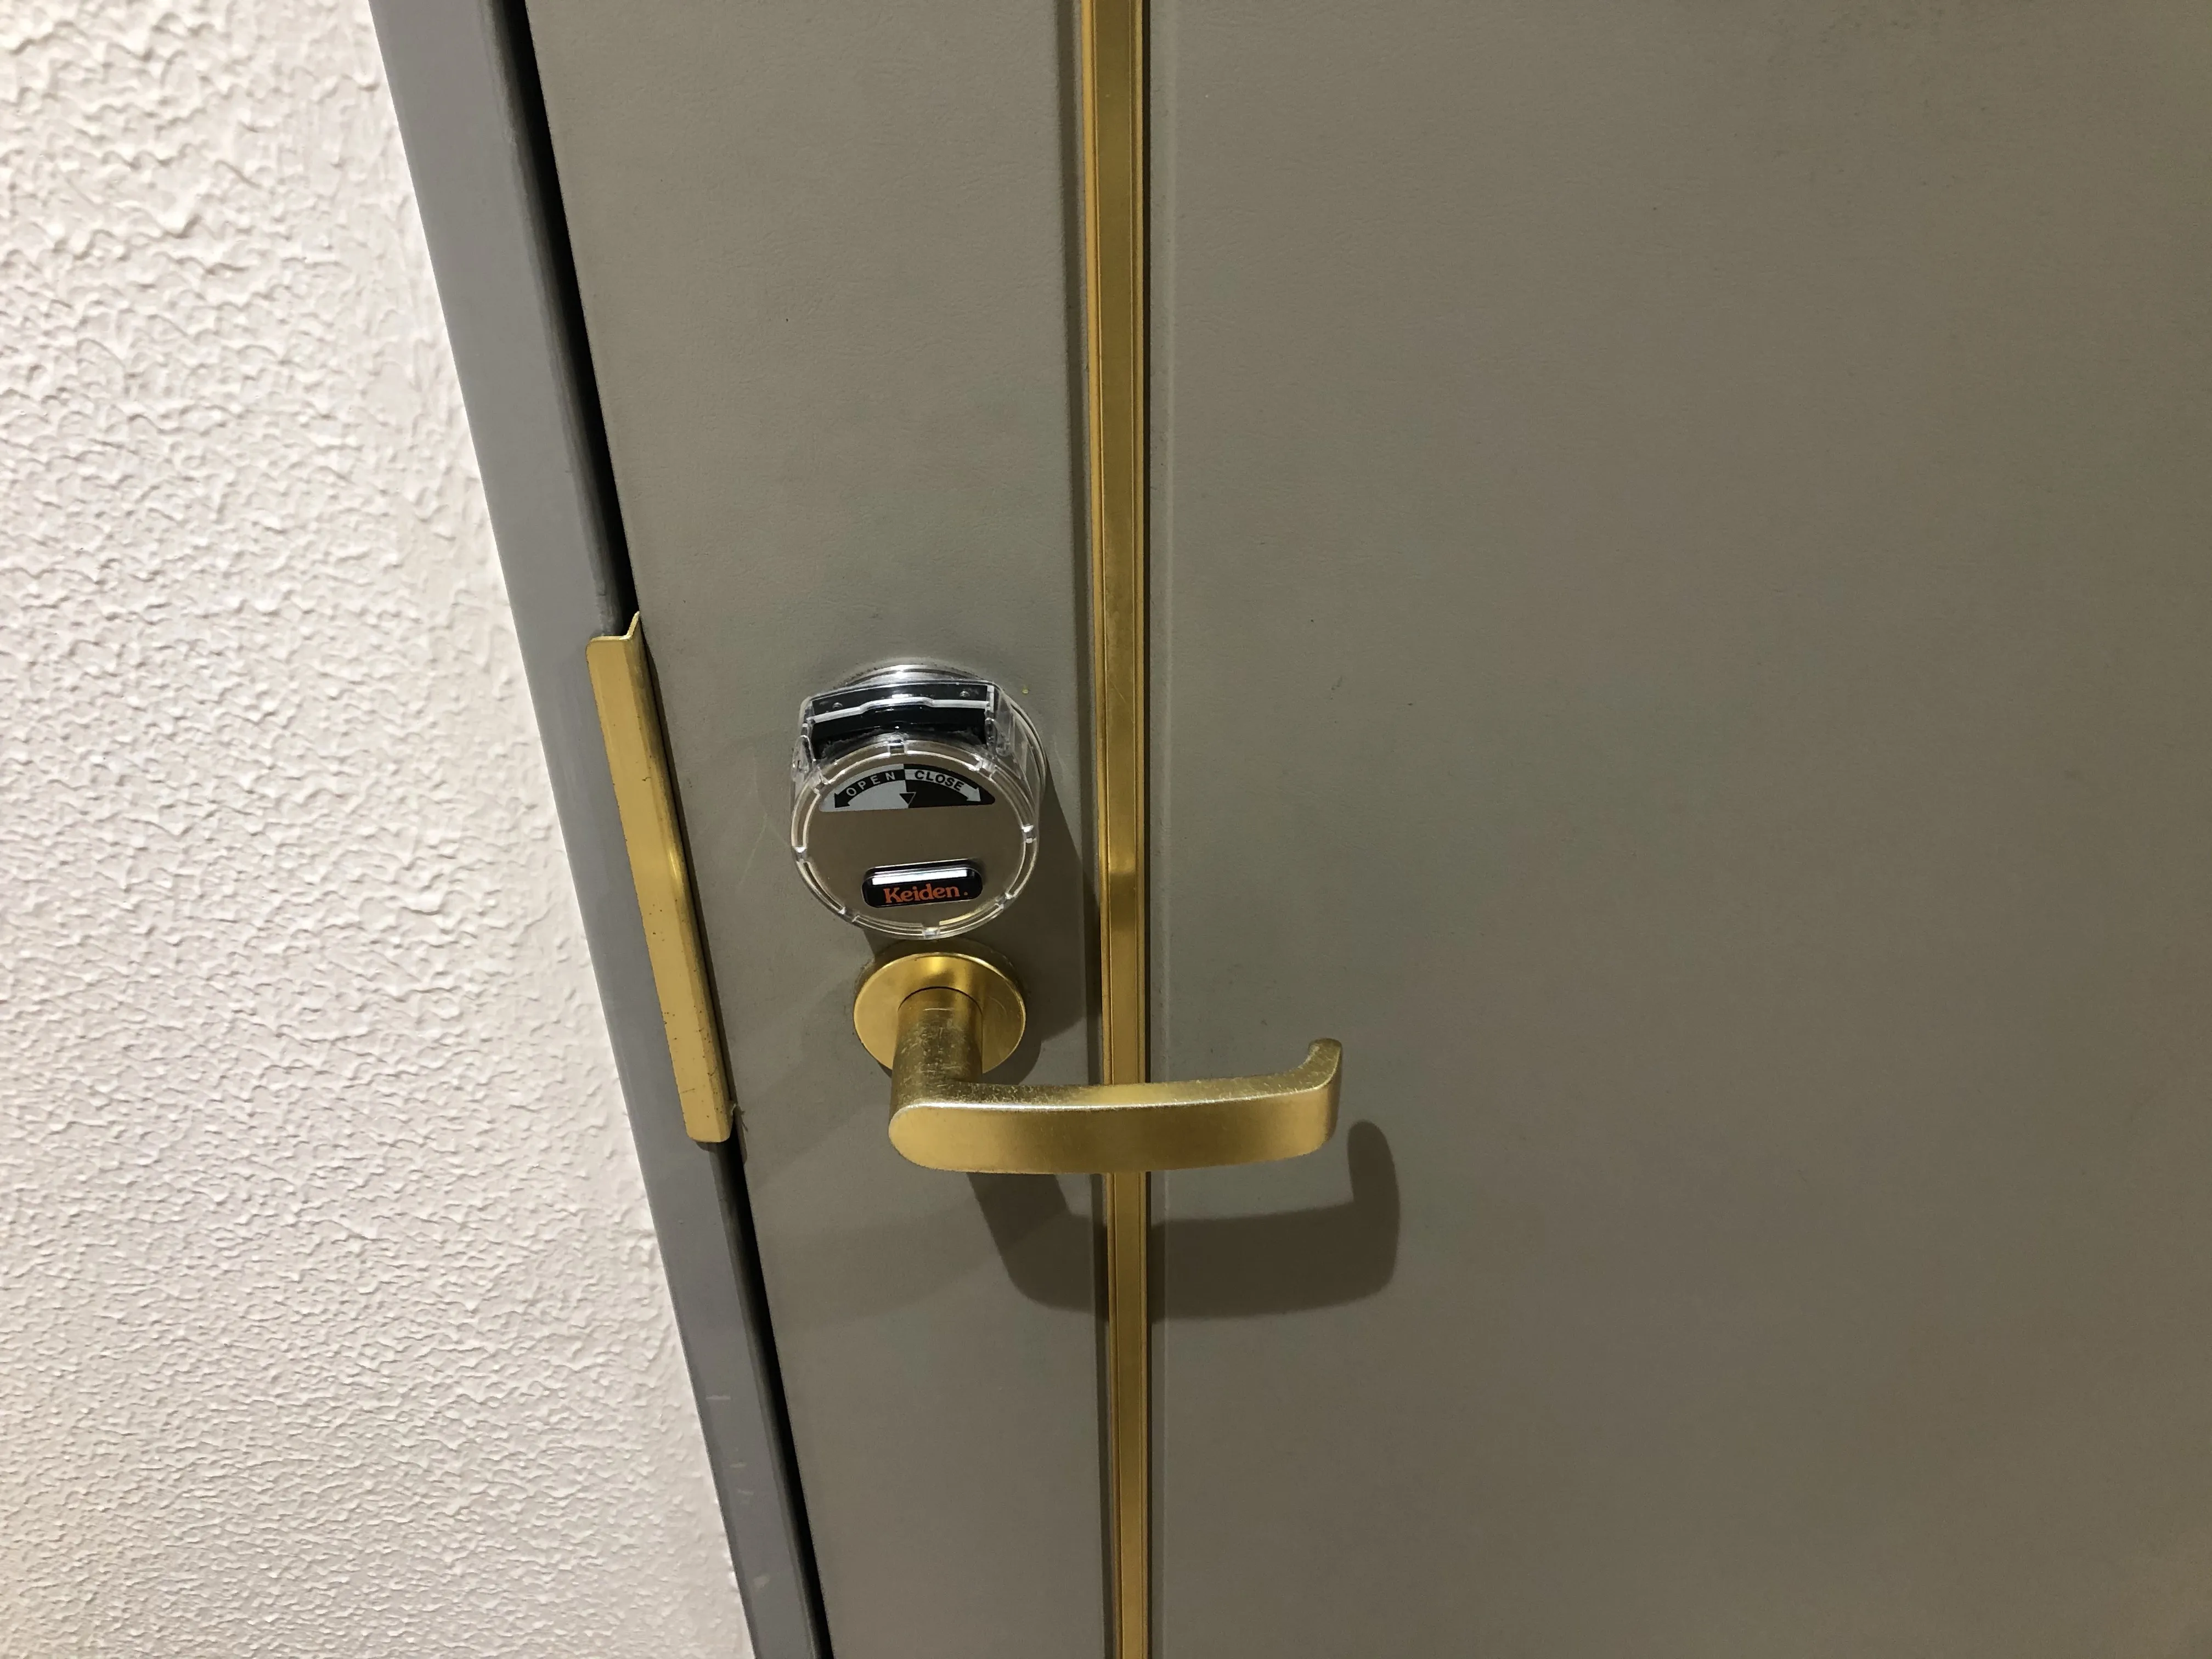 福岡市南区で鍵の開錠を依頼するなら「鍵当番さん」へ